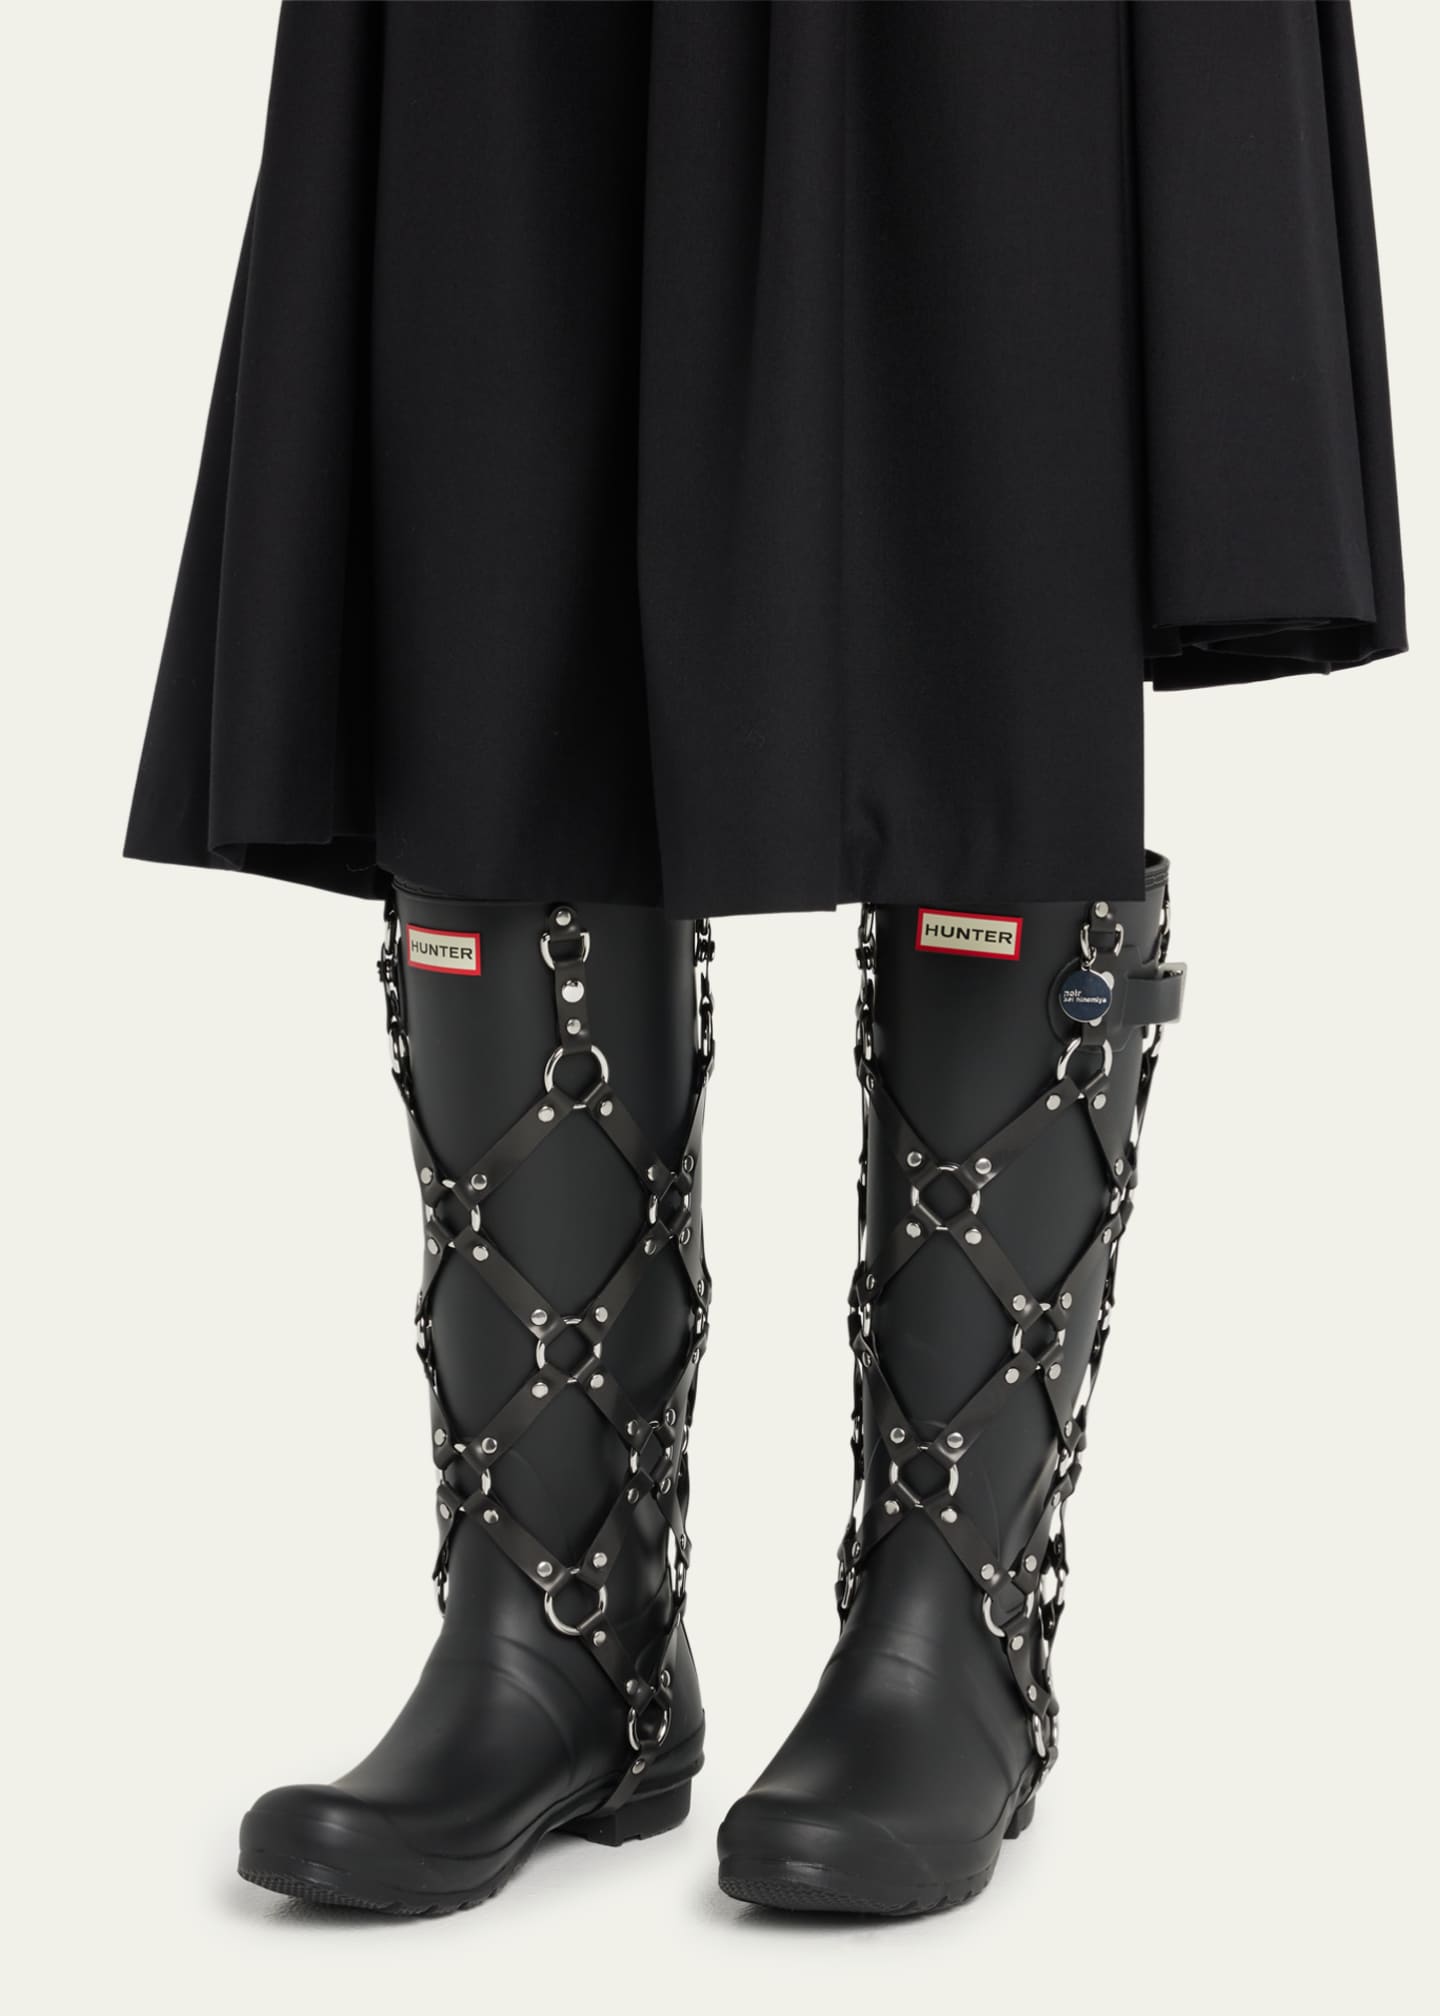 Noir Kei Ninomiya x Hunter Harness Rain Boots